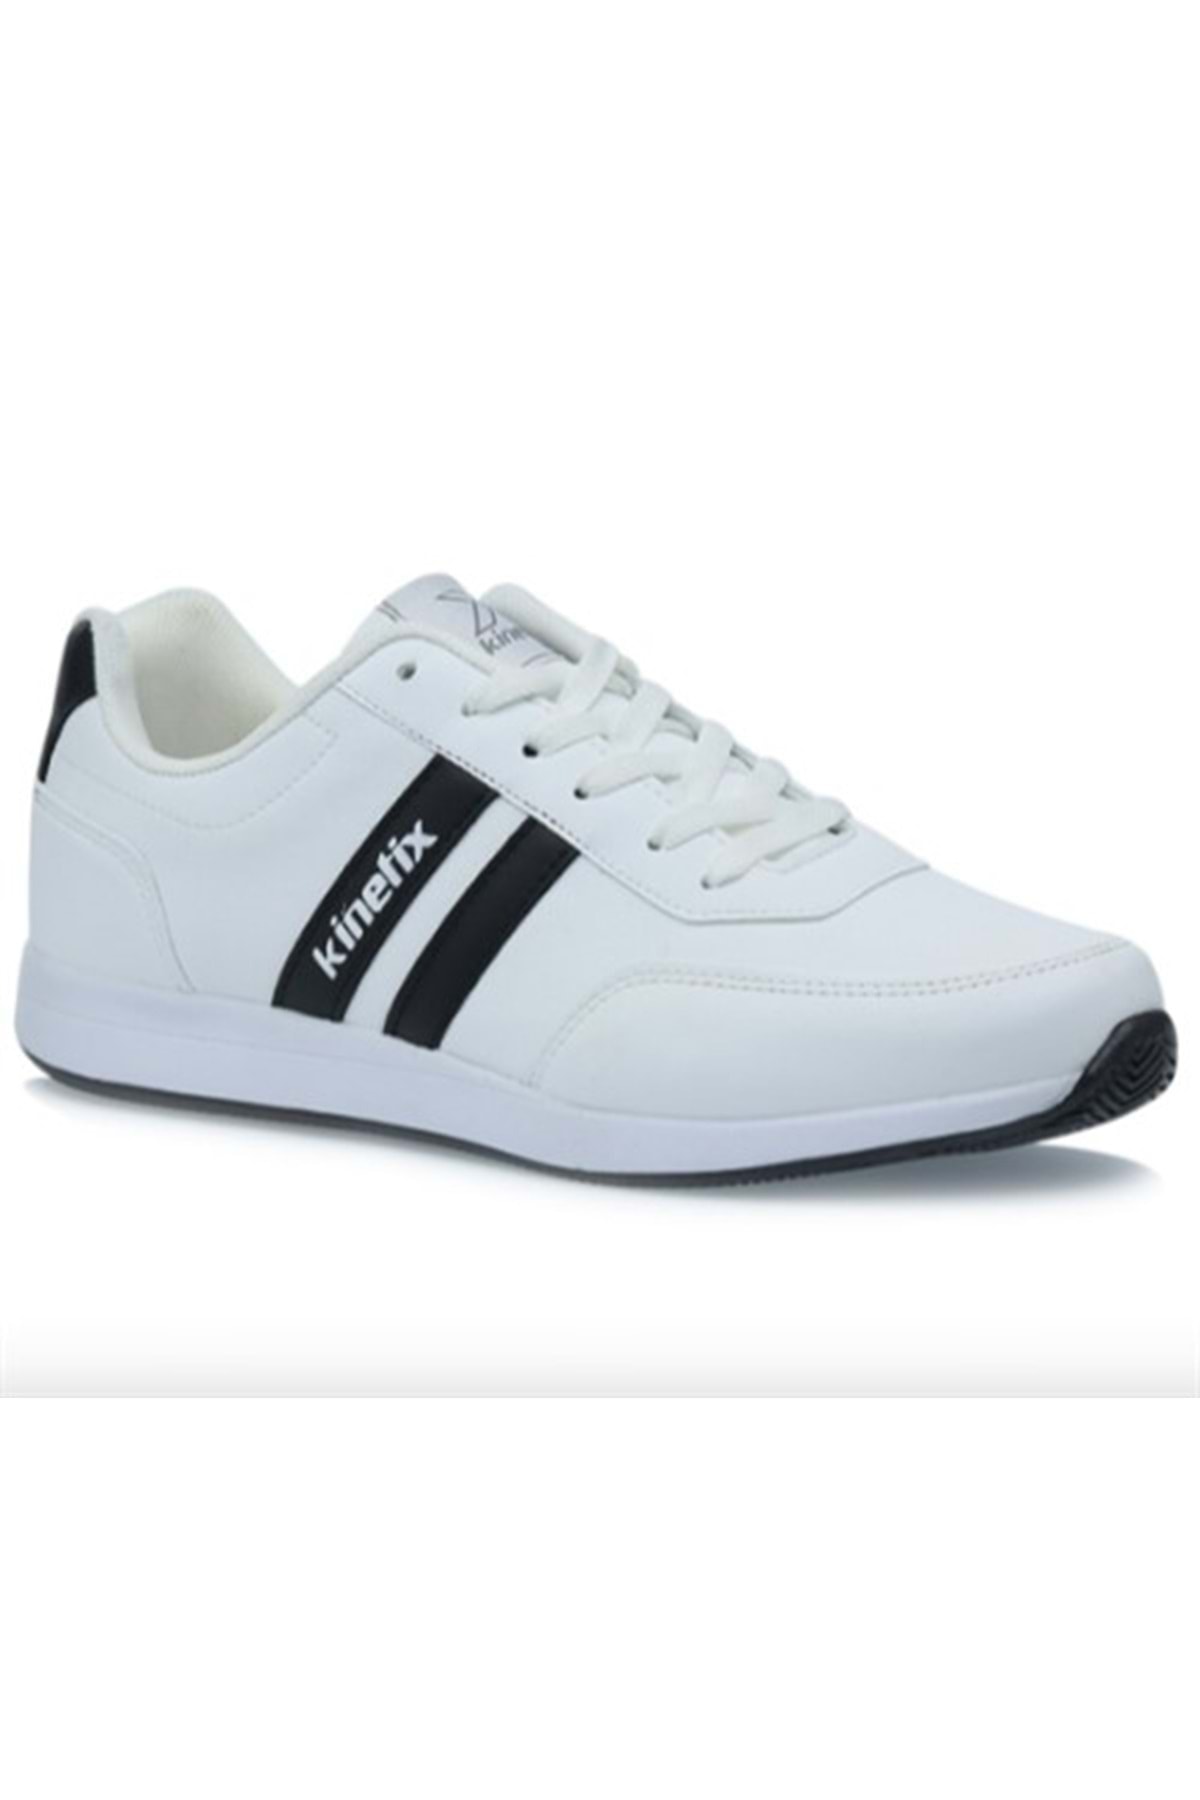 Kinetix Reeds Pu 1pr Sneaker Erkek Spor Ayakkabı - Beyaz - 40